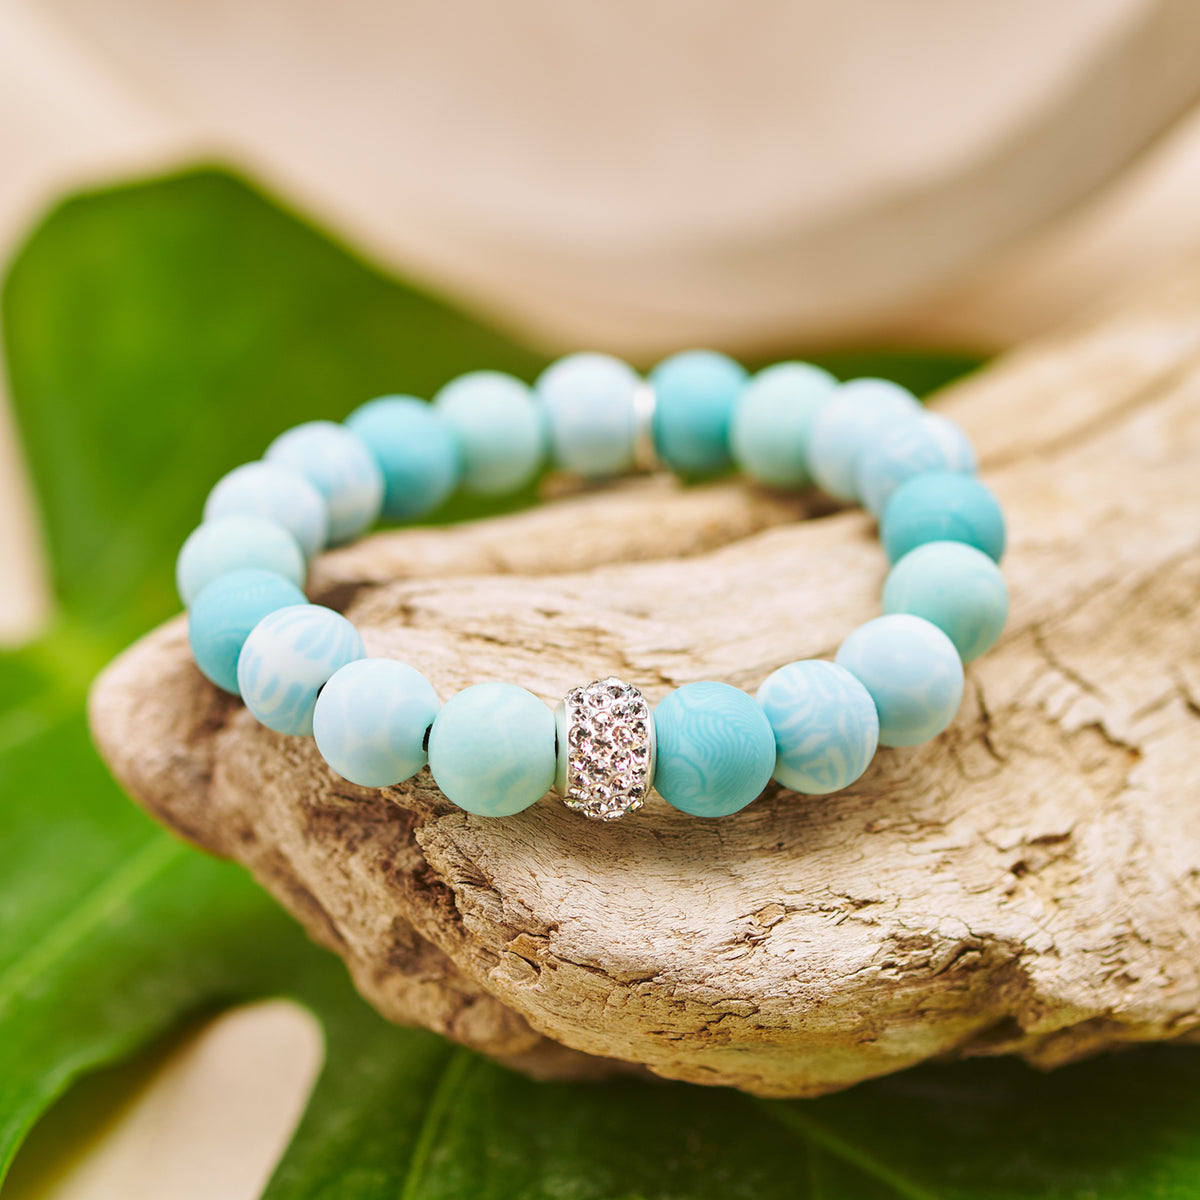 Maui Blue Crystal Stretch Bracelet